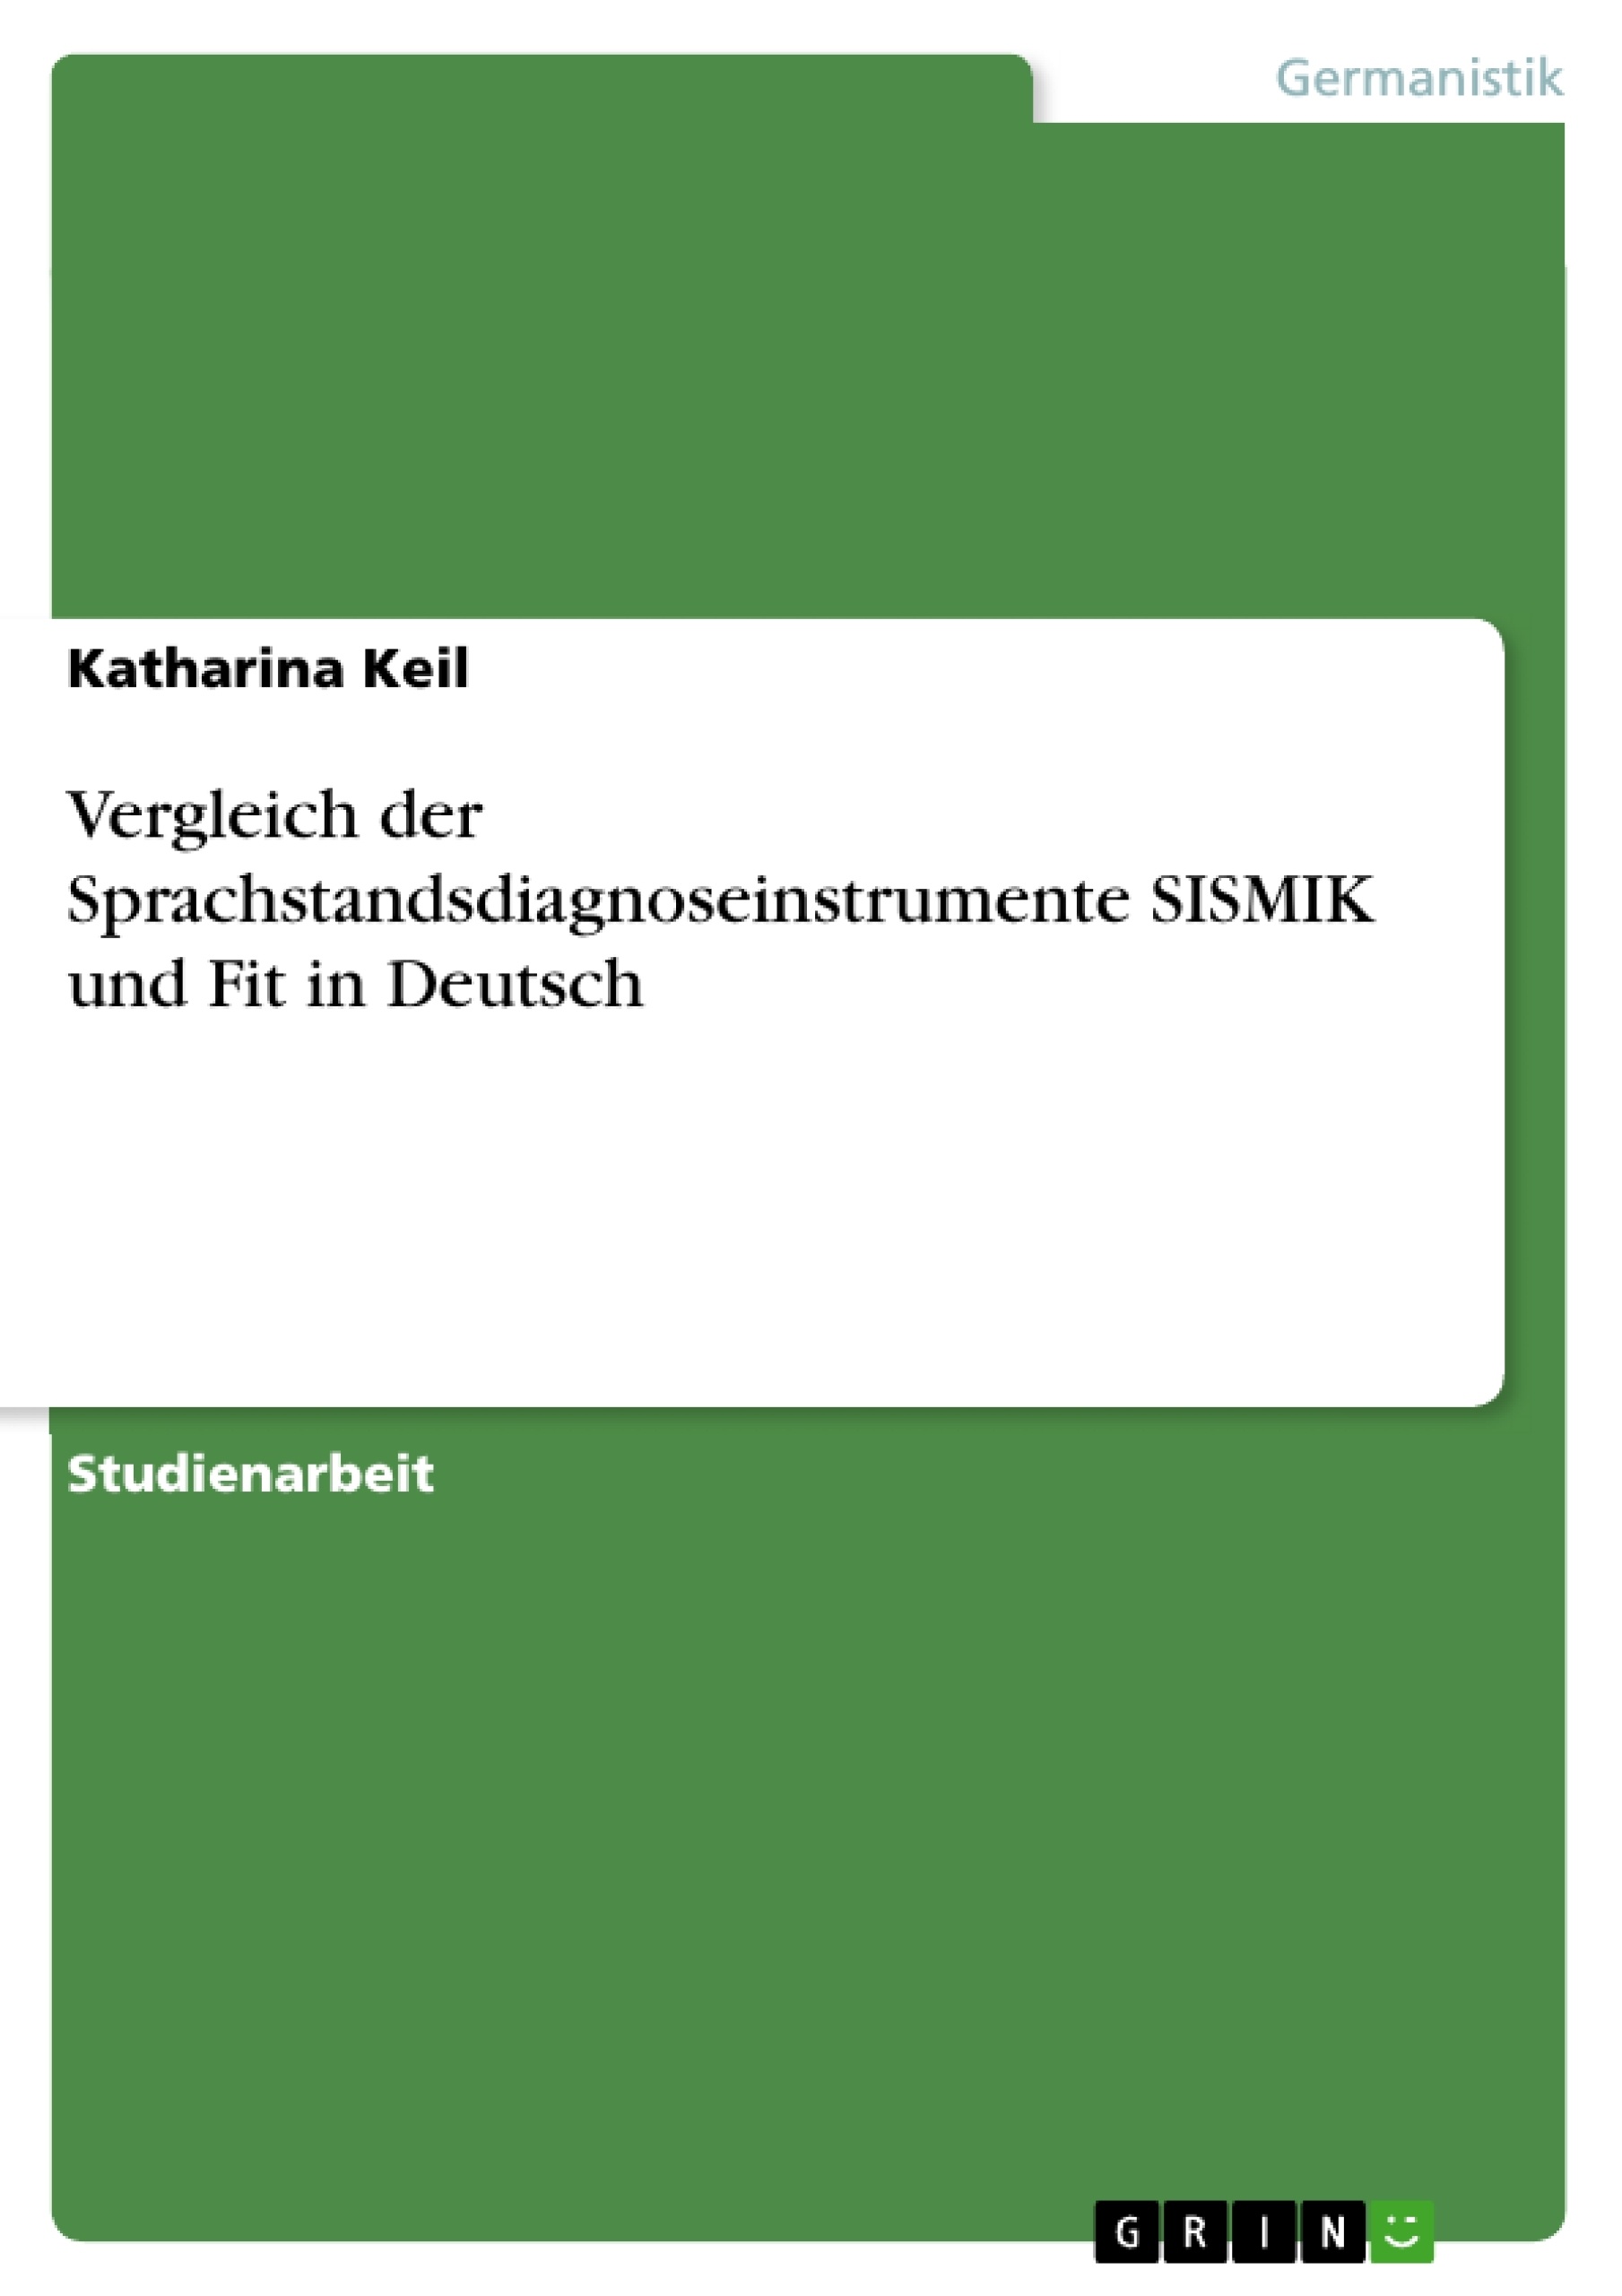 Title: Vergleich der Sprachstandsdiagnoseinstrumente SISMIK und Fit in Deutsch